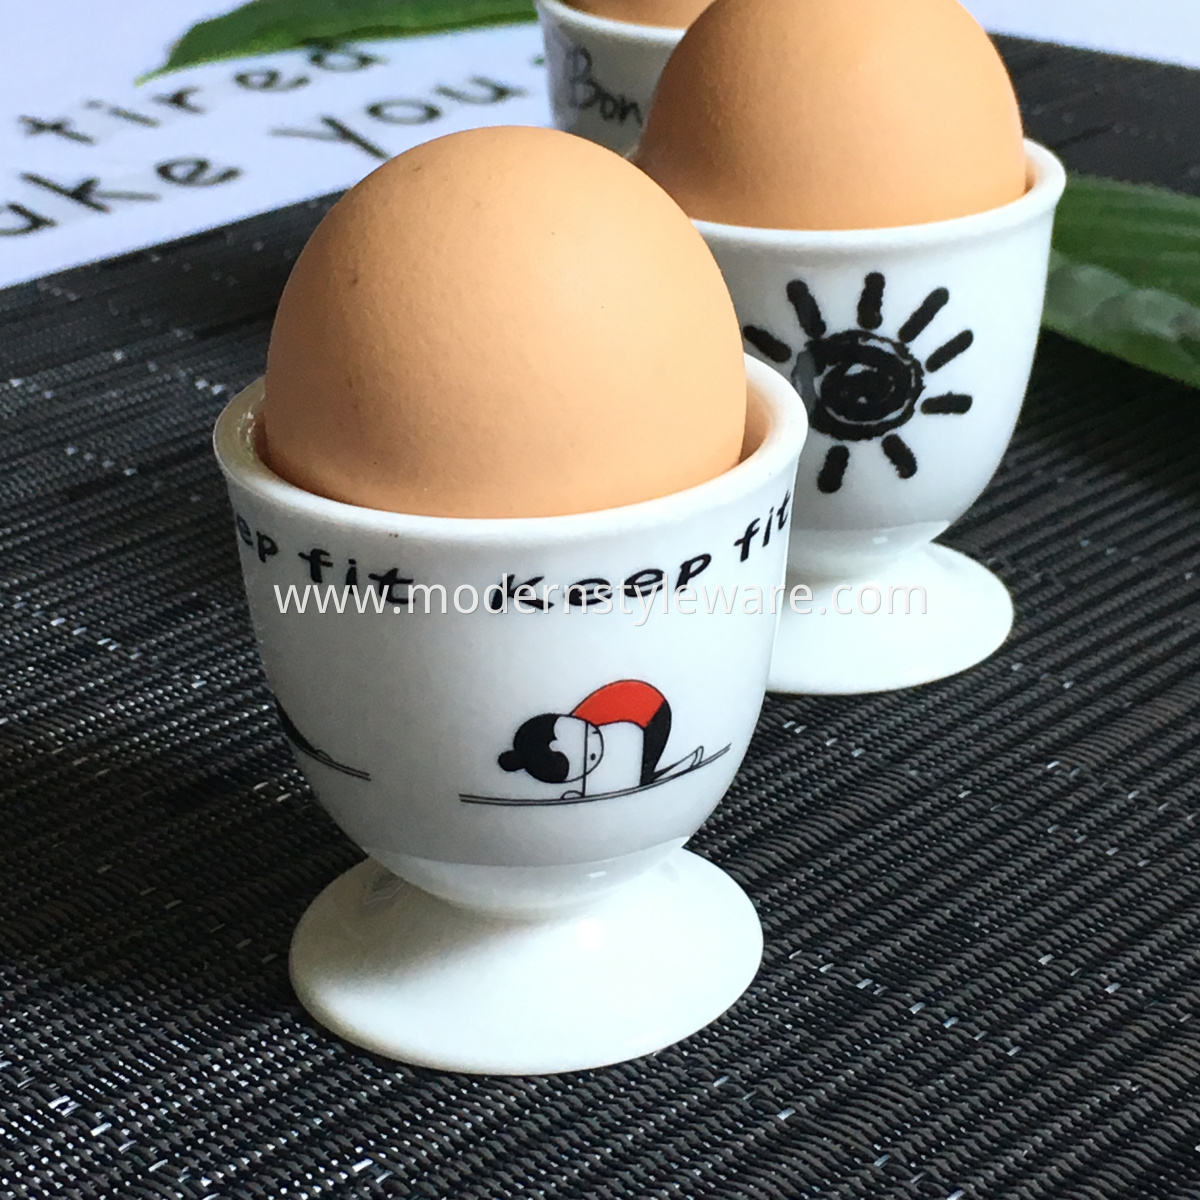 Ceramic Egg Cups